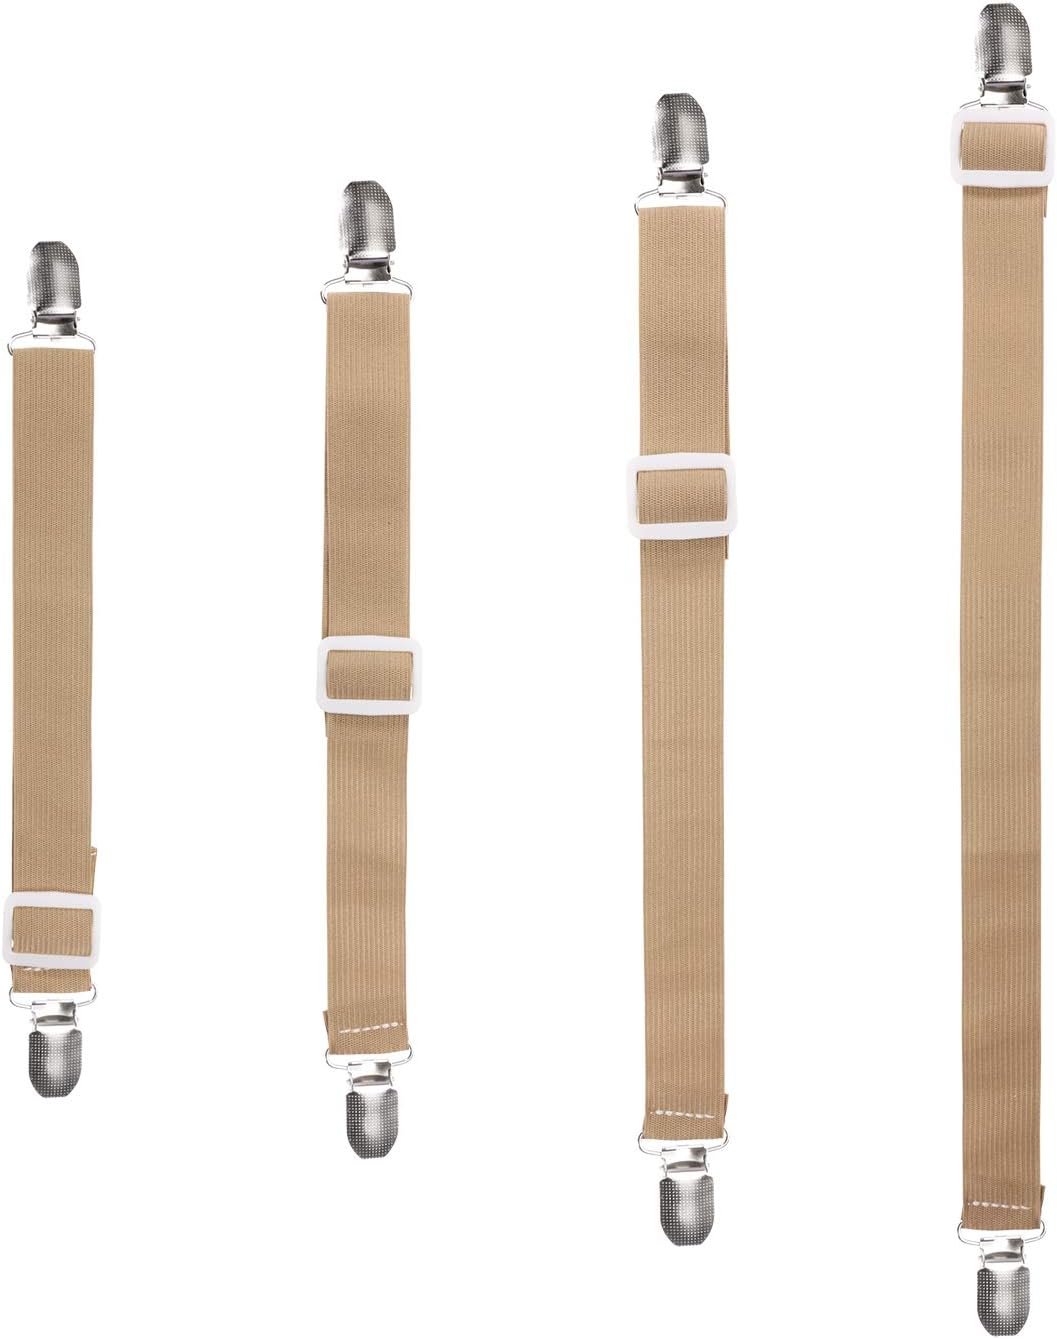 8/16 Adjustable Bed Fitted Sheet Straps Clips Suspenders Gripper Fastener Holder 